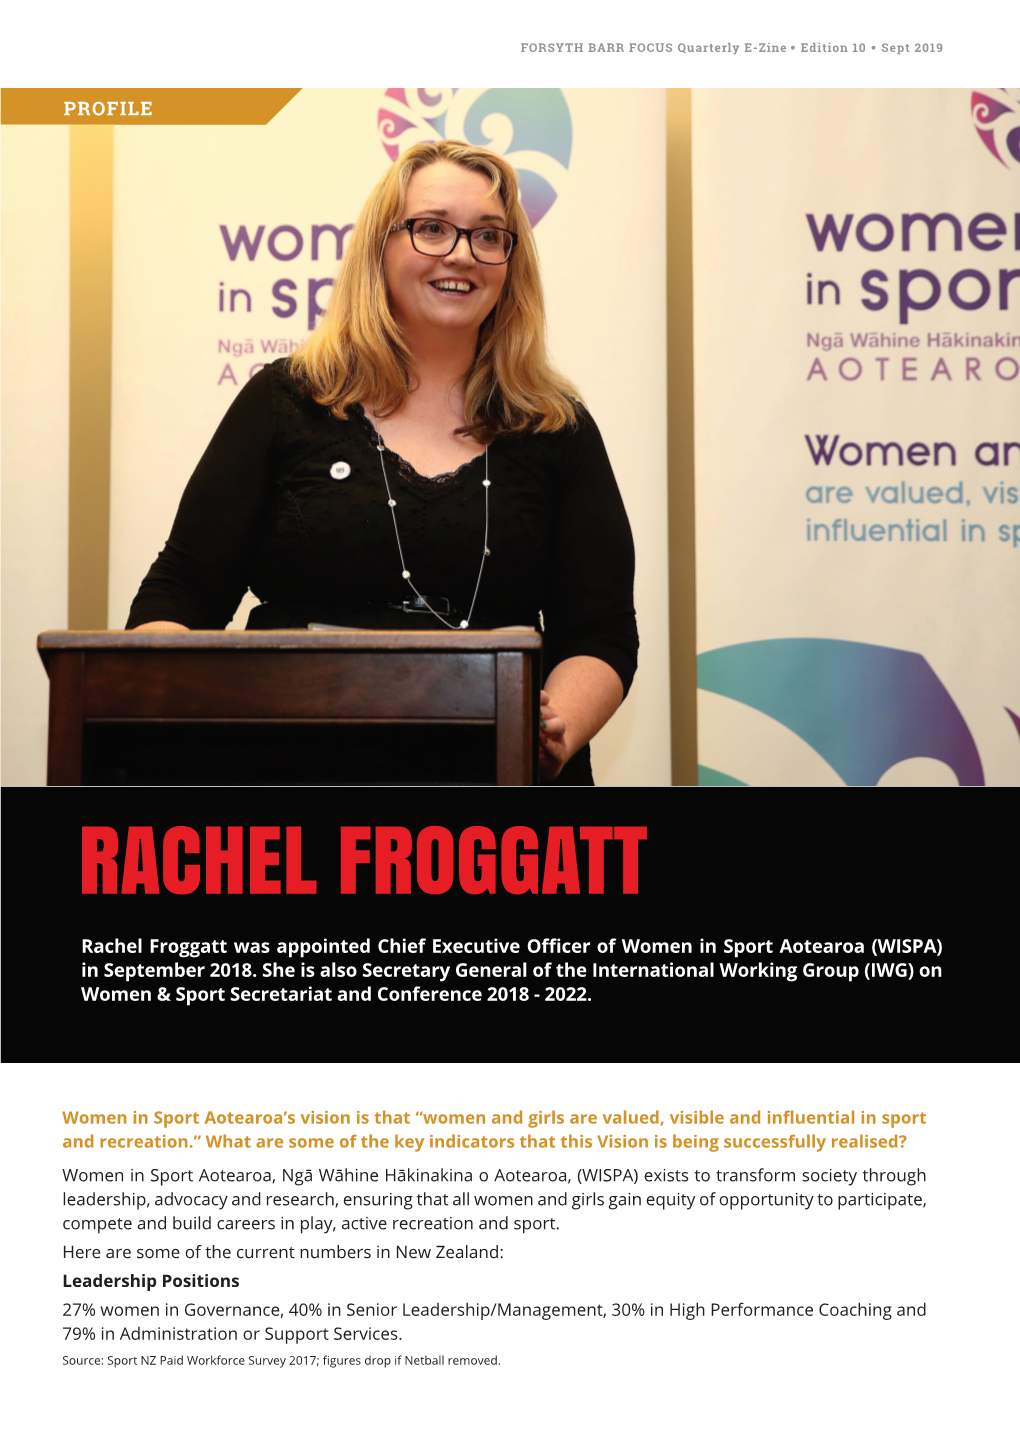 RACHEL FROGGATT Rachel Froggatt Was Appointed Chief Executive Officer of Women in Sport Aotearoa (WISPA) in September 2018